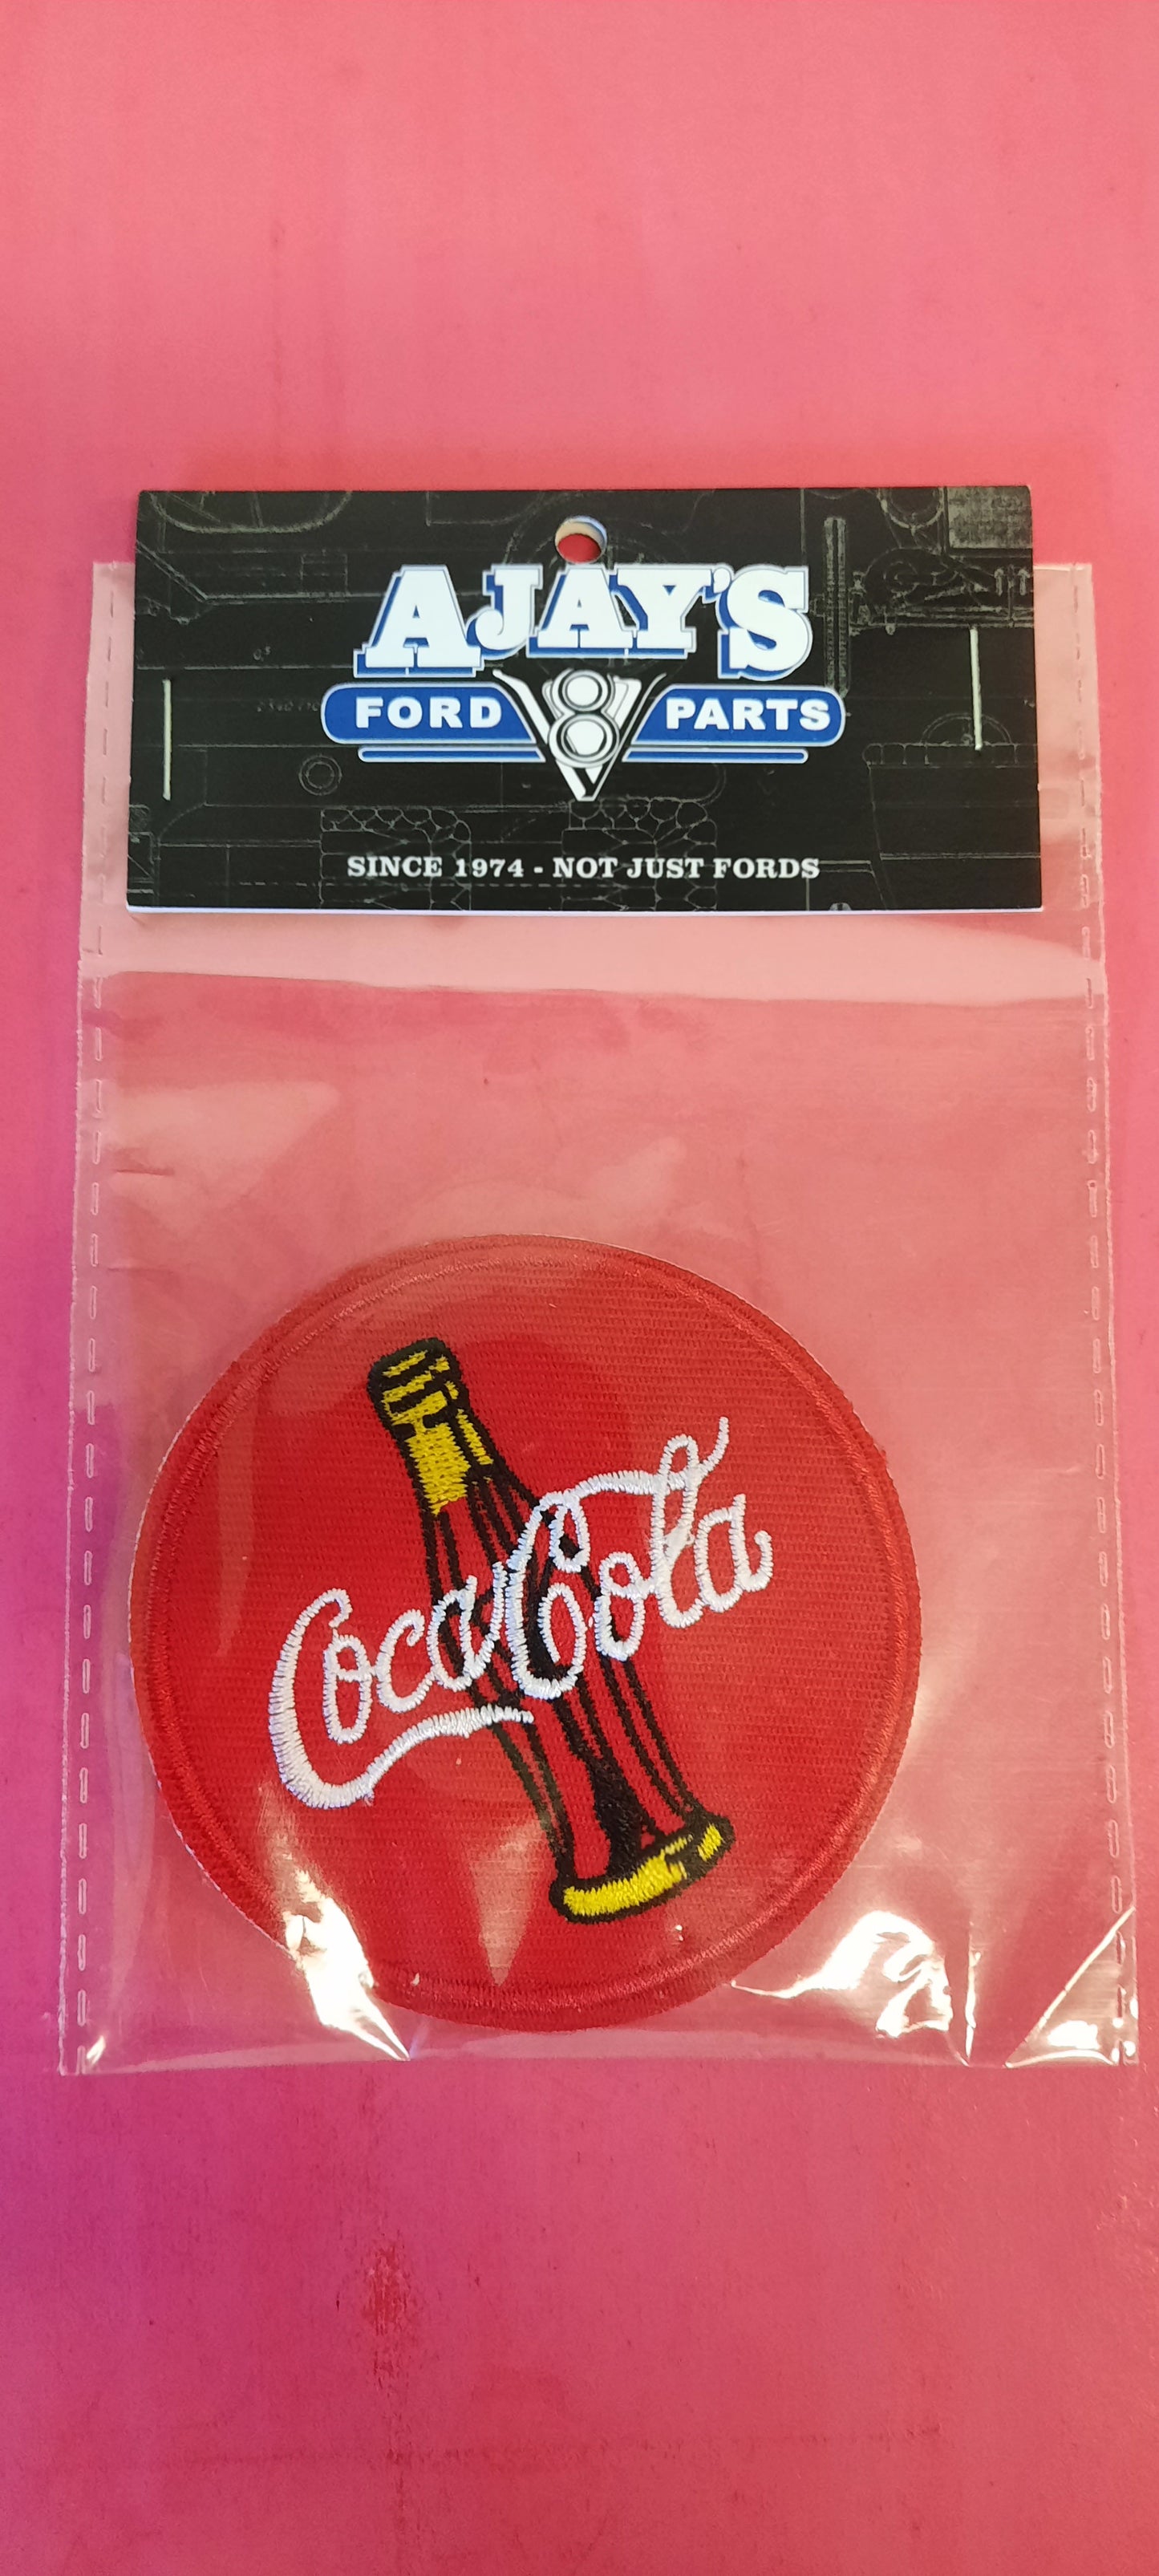 Coca-Cola Embroidery Motif